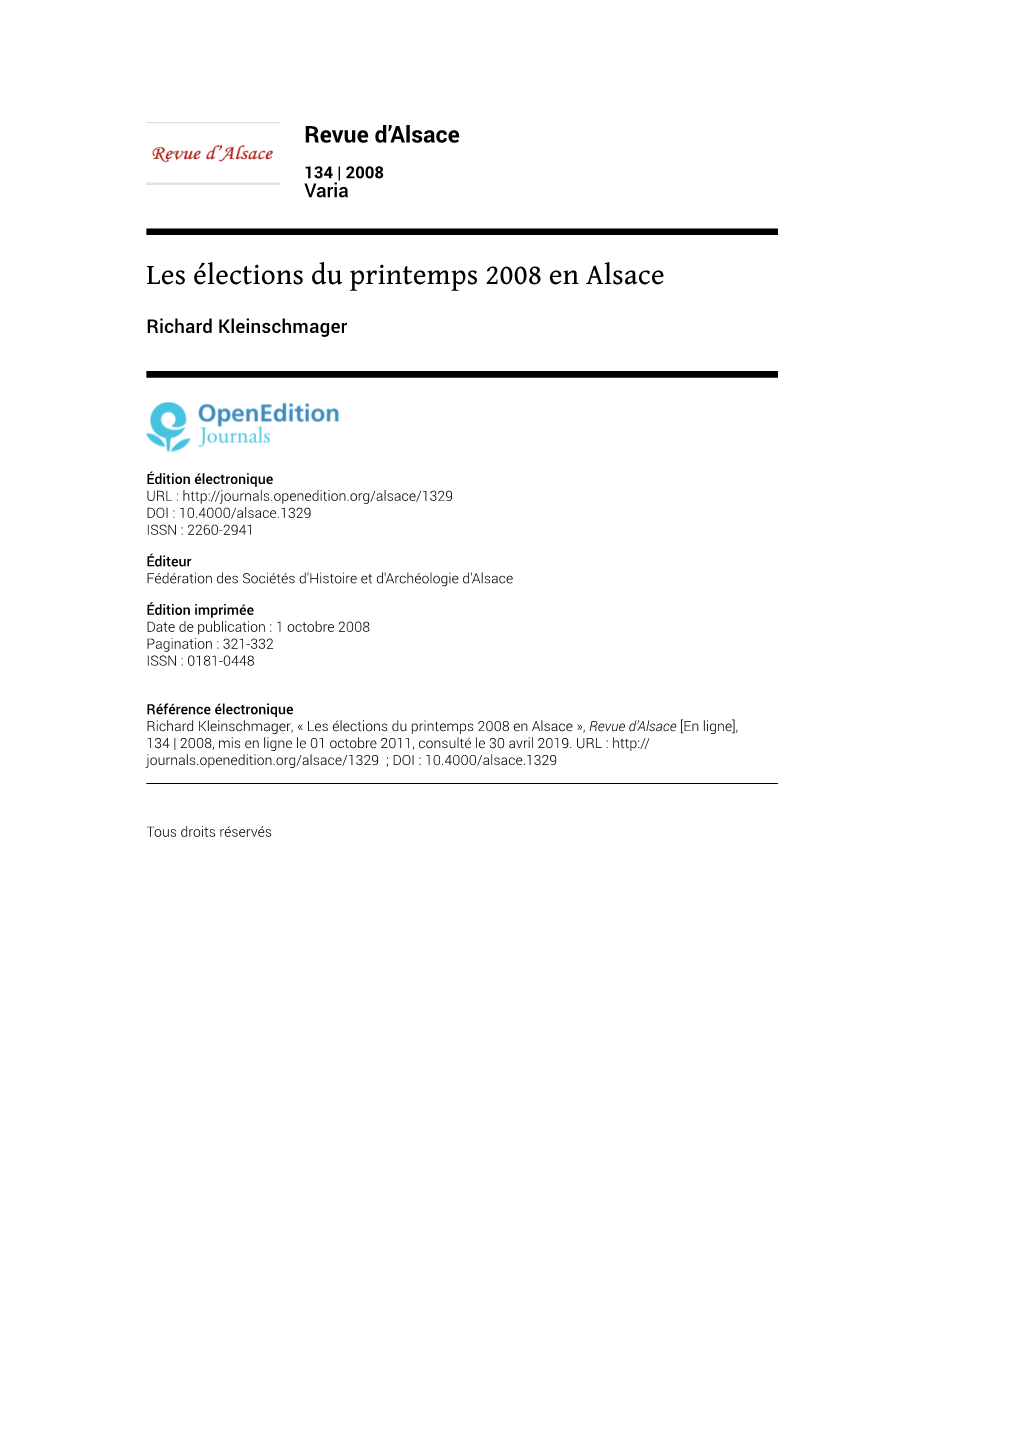 Les Élections Du Printemps 2008 En Alsace